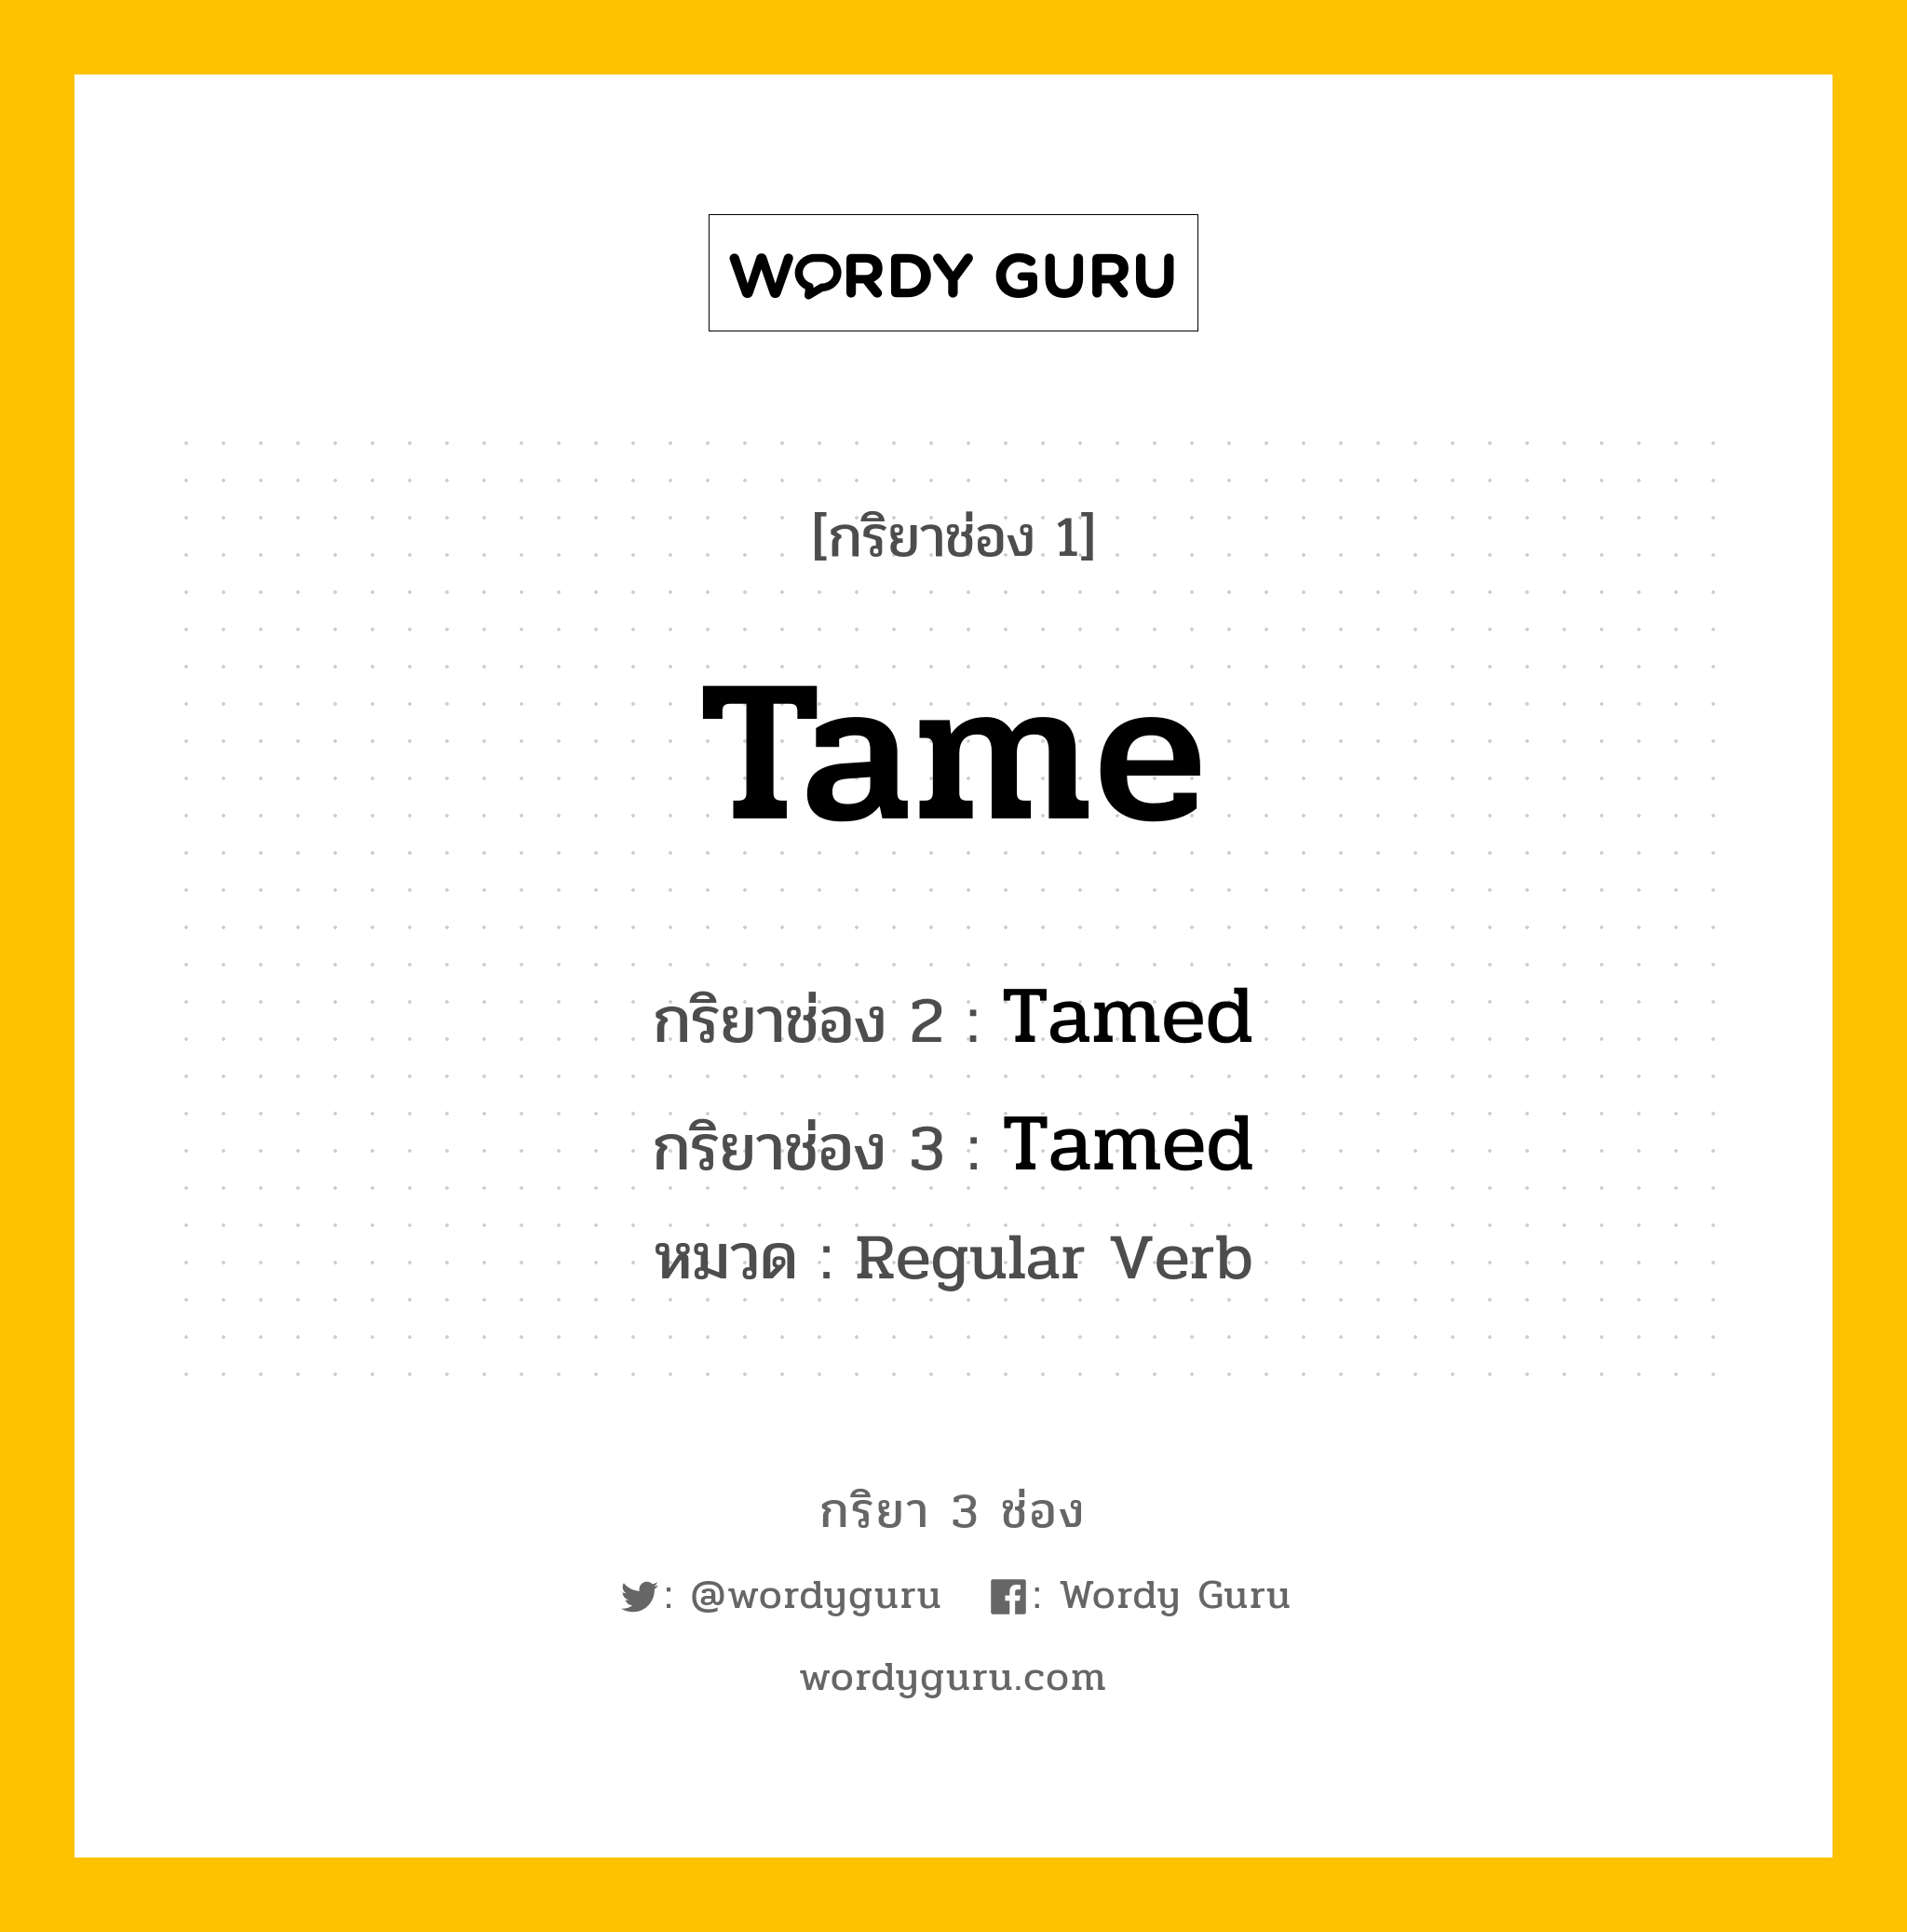 กริยา 3 ช่อง: Tame ช่อง 2 Tame ช่อง 3 คืออะไร, กริยาช่อง 1 Tame กริยาช่อง 2 Tamed กริยาช่อง 3 Tamed หมวด Regular Verb หมวด Regular Verb